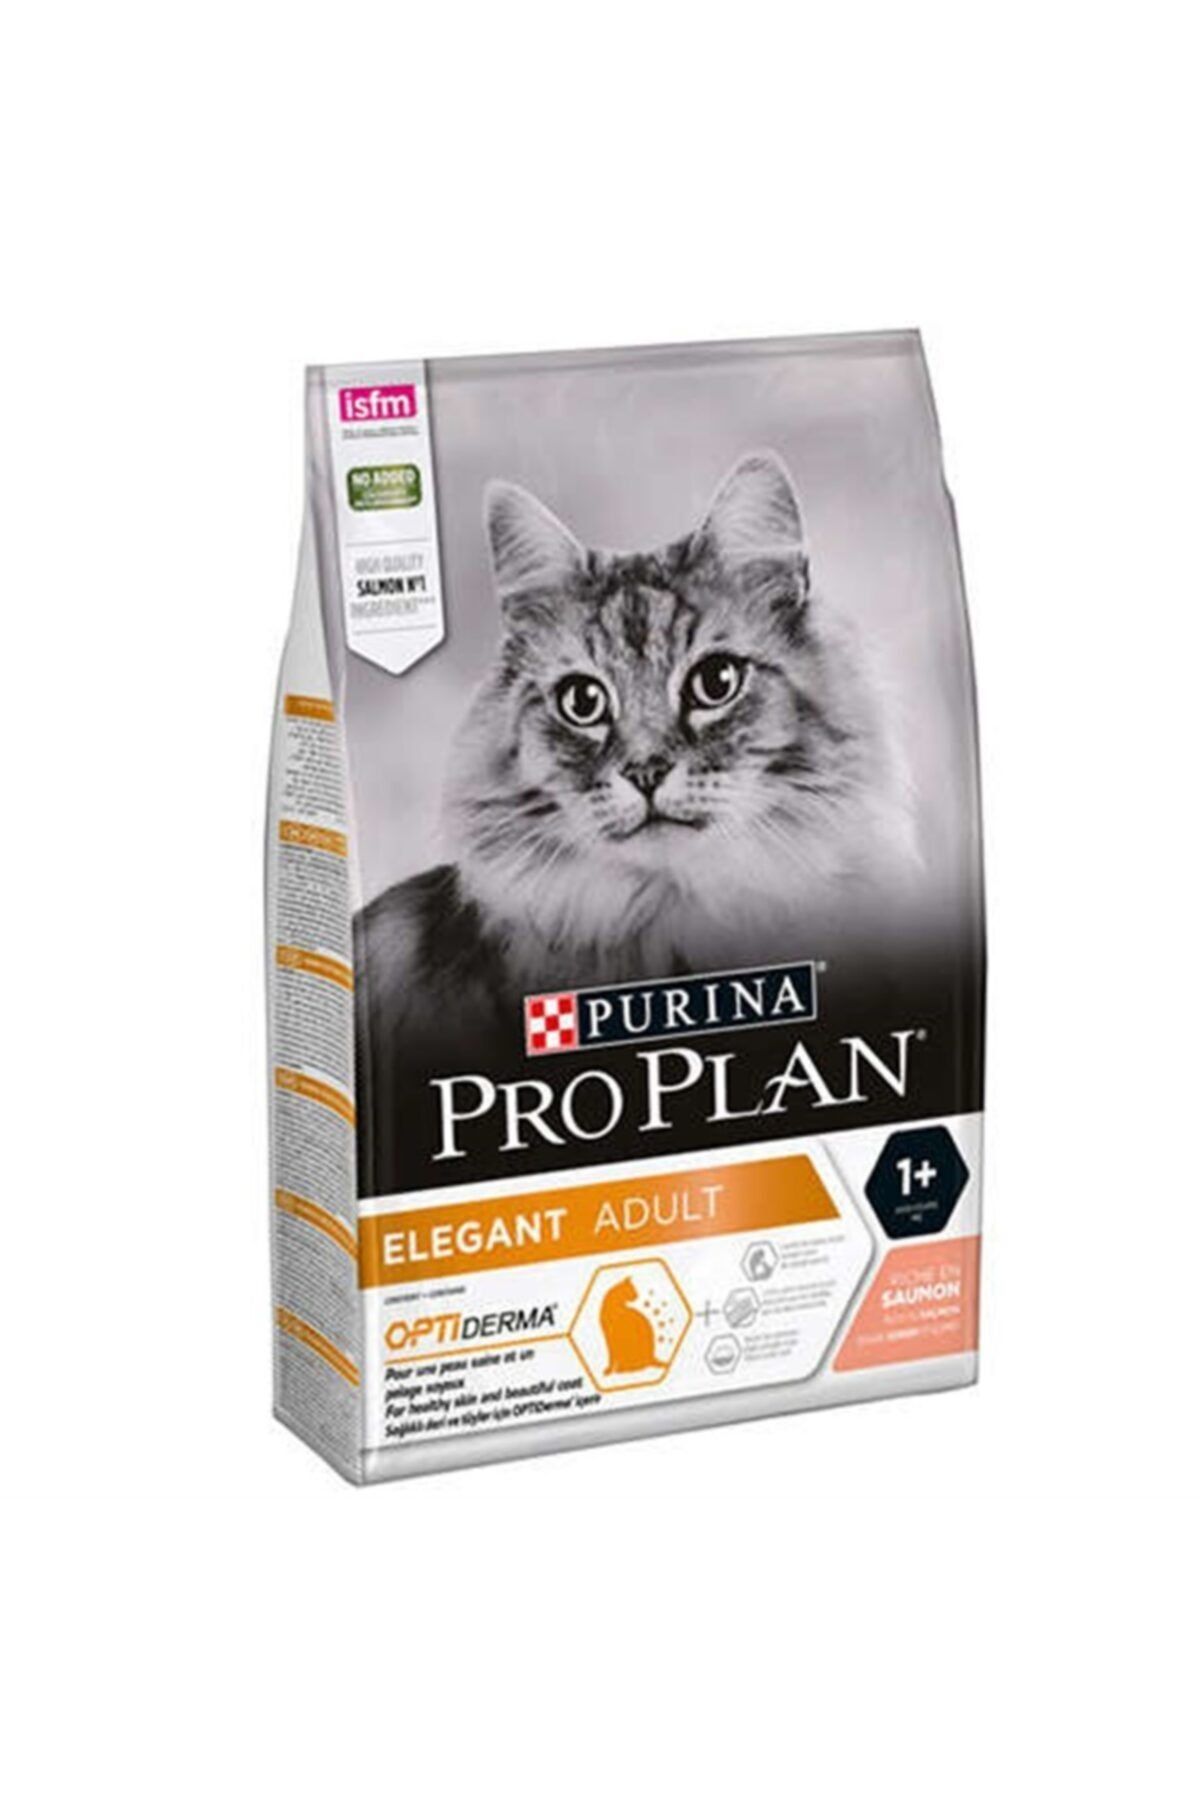 Proplan Pro Plan Elegant Opti Derma Somonlu Yetişkin Kedi Maması 3 Kg - Tüy Yumağı Kontrolü